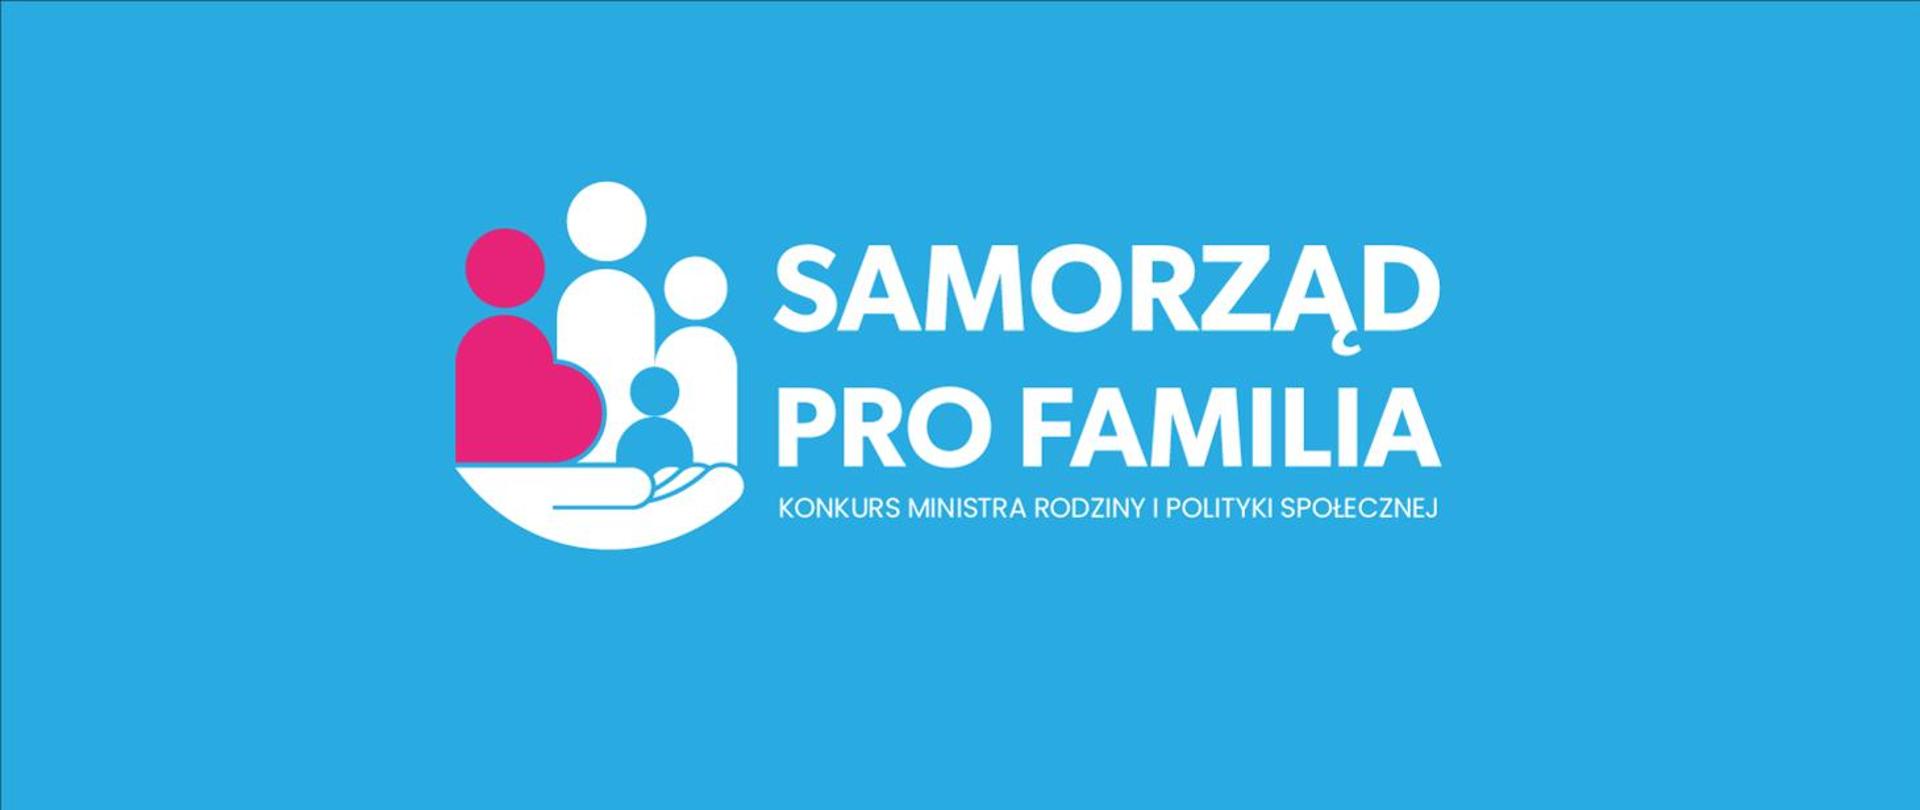 Self-government pro familia 2022